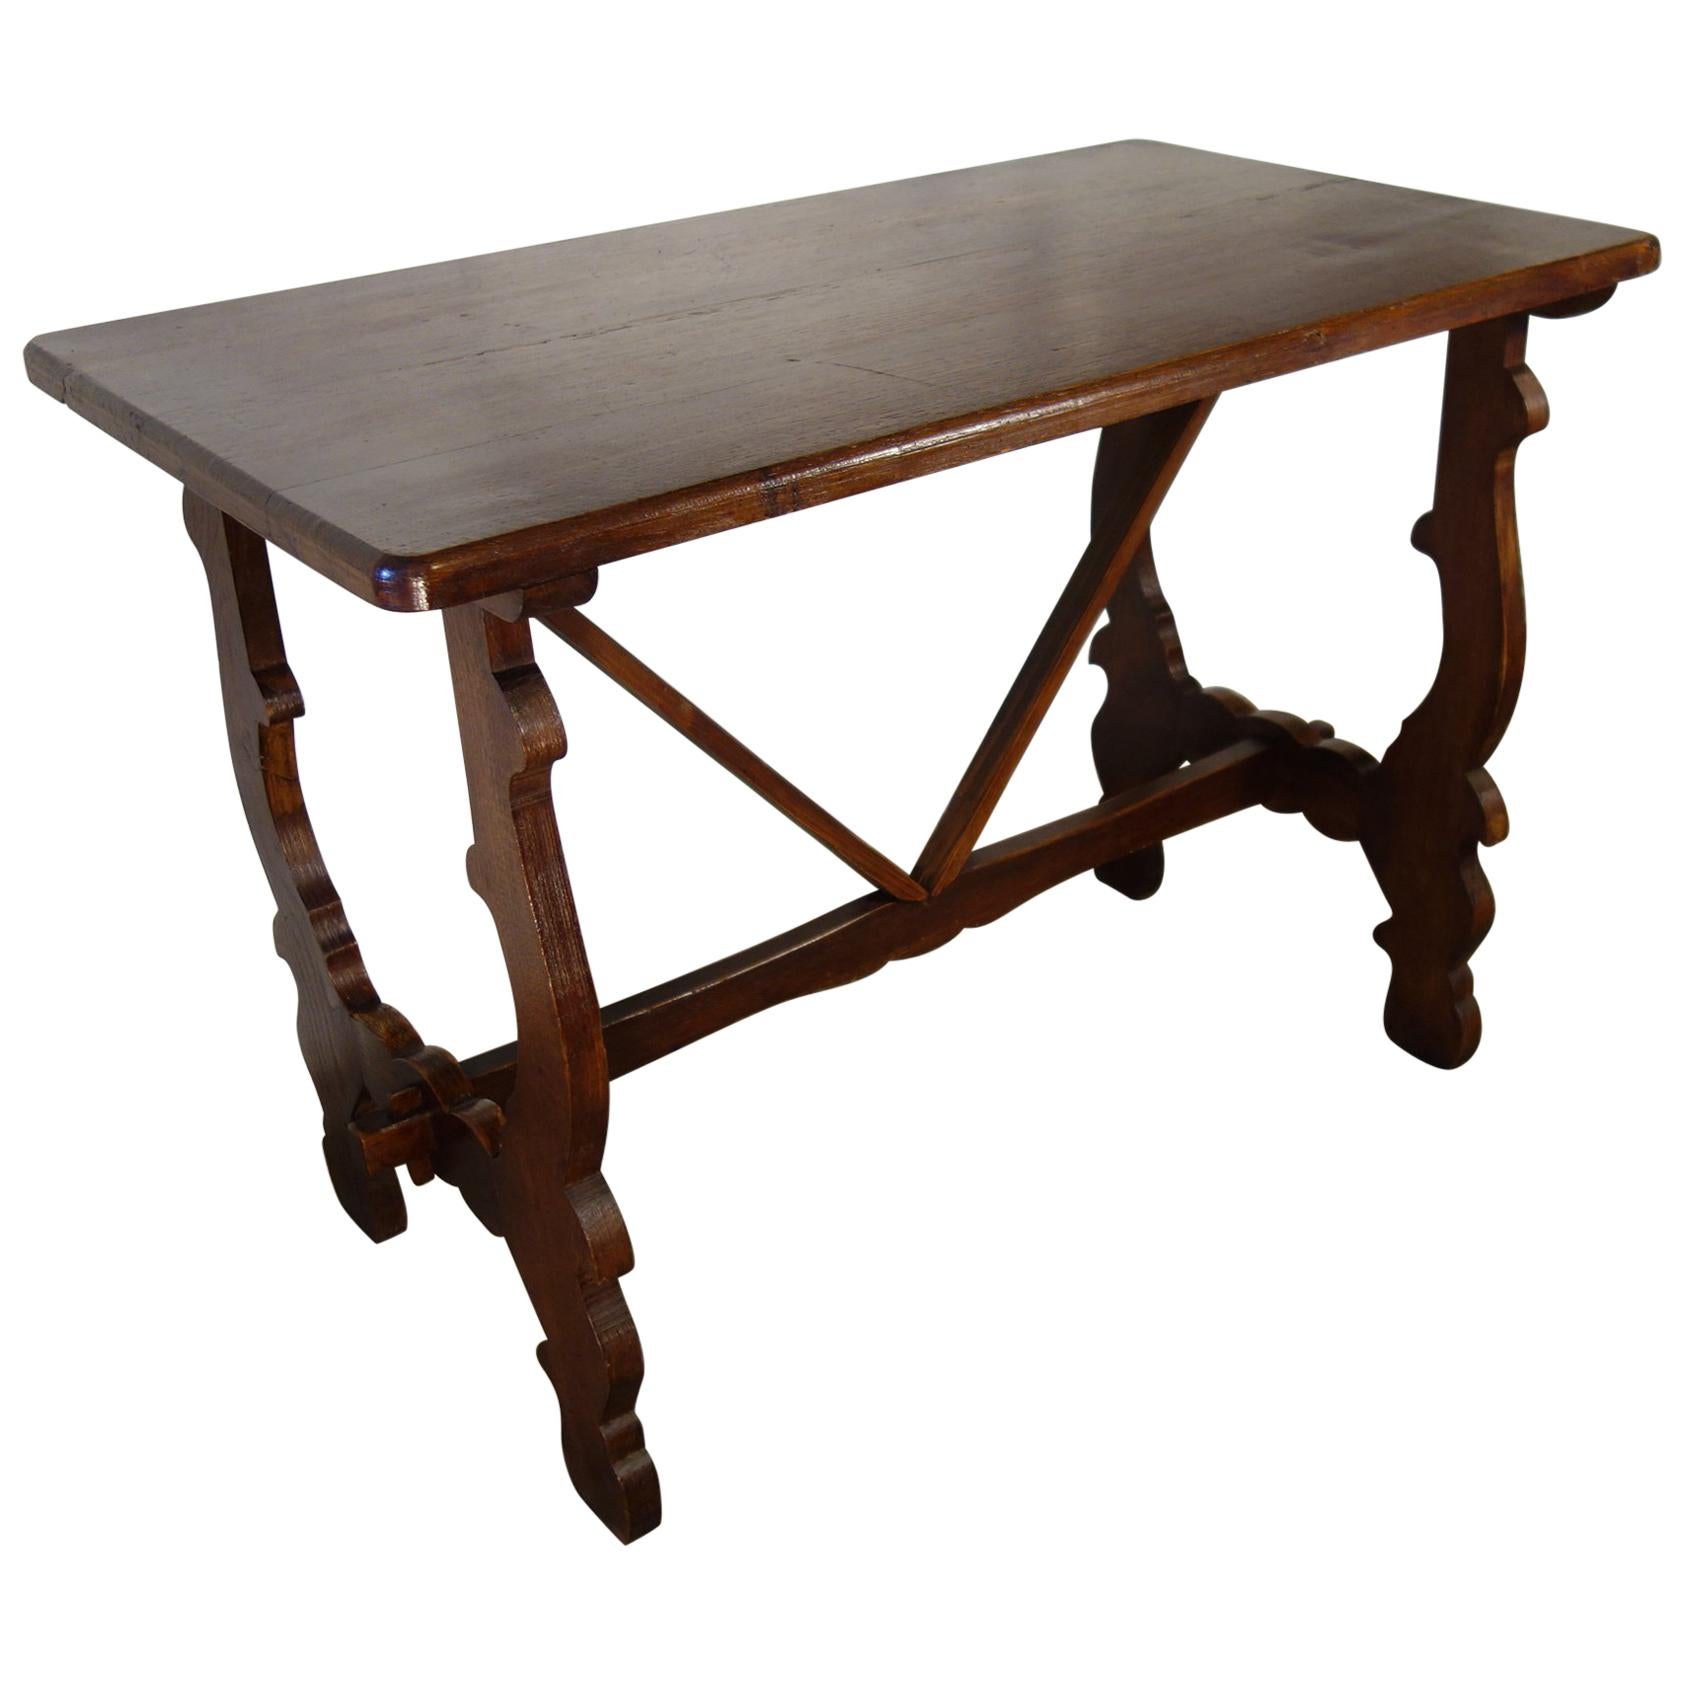 Ancienne table de ferme italienne de style réfectoire de la Renaissance en chêne, fabriquée à la main en vente